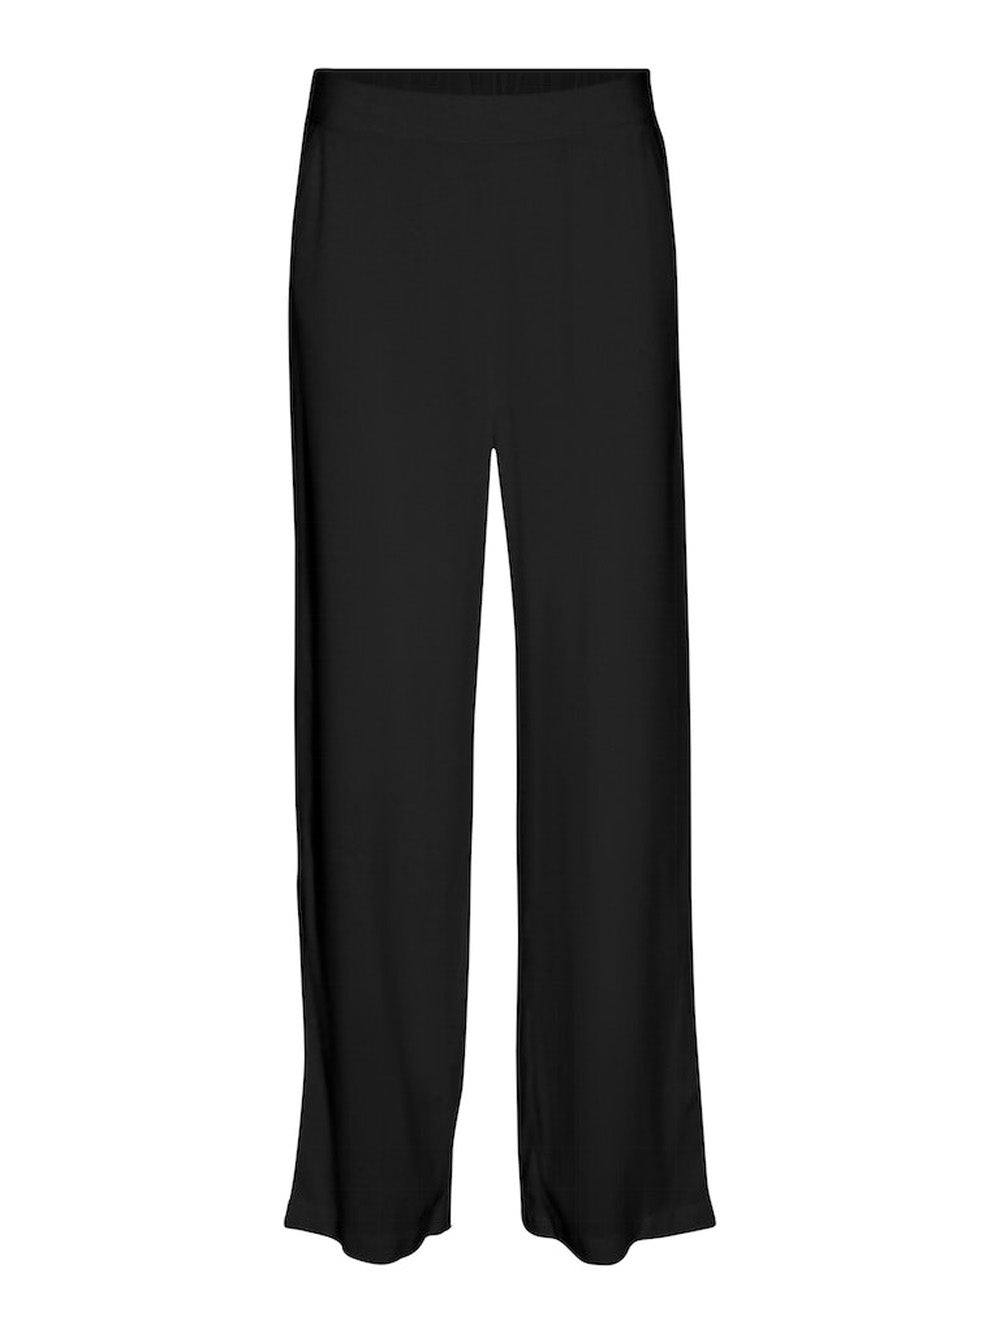 VERO MODA Pantalone Donna - Nero modello 10297357